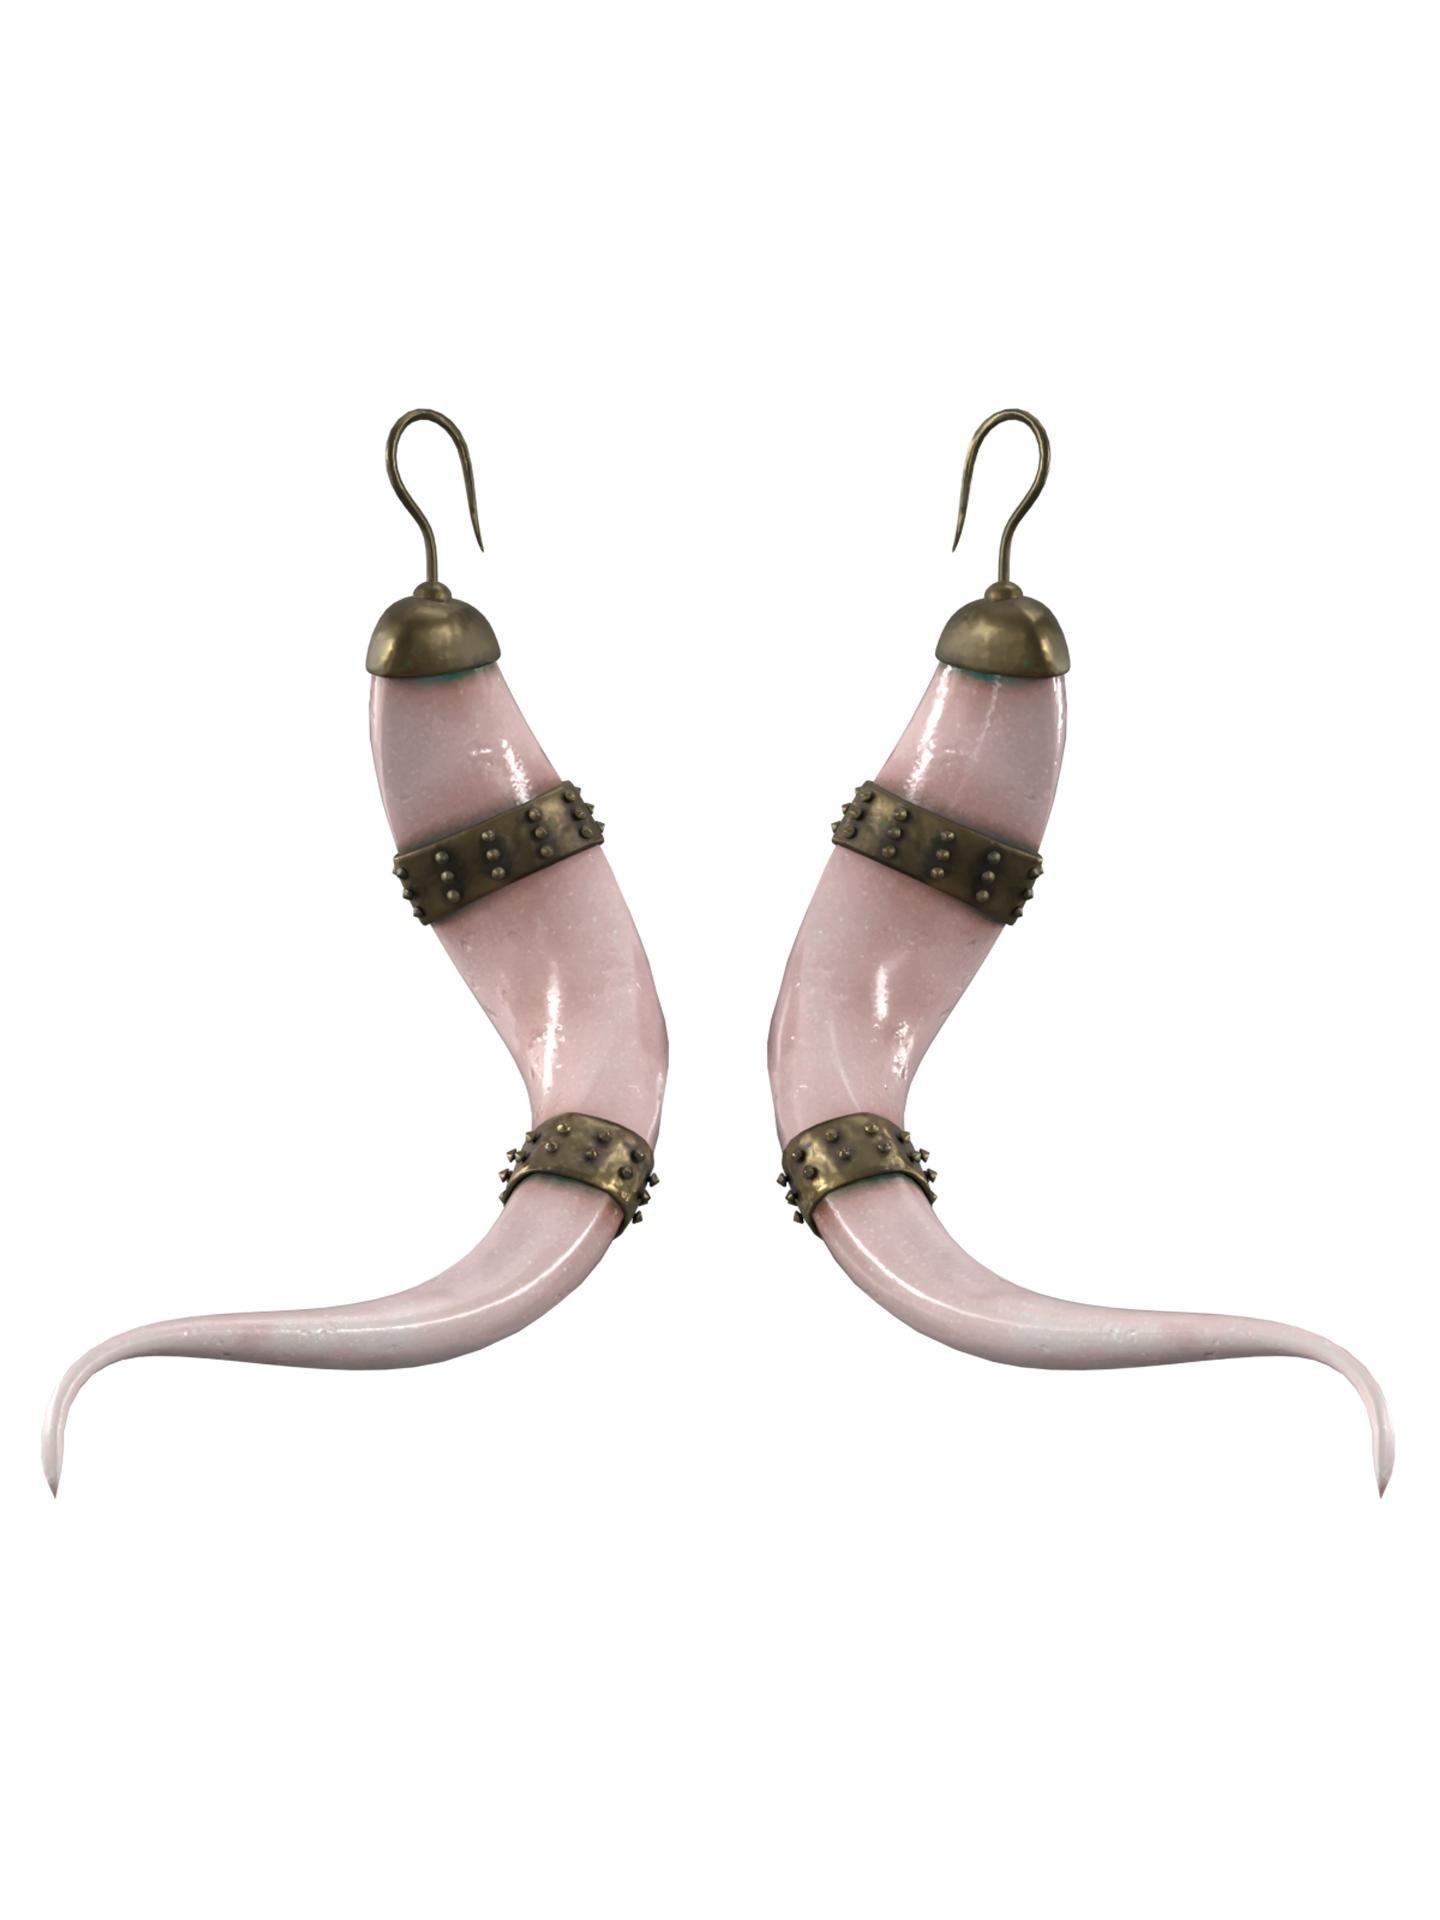 Earrings.horns by CINPHUL